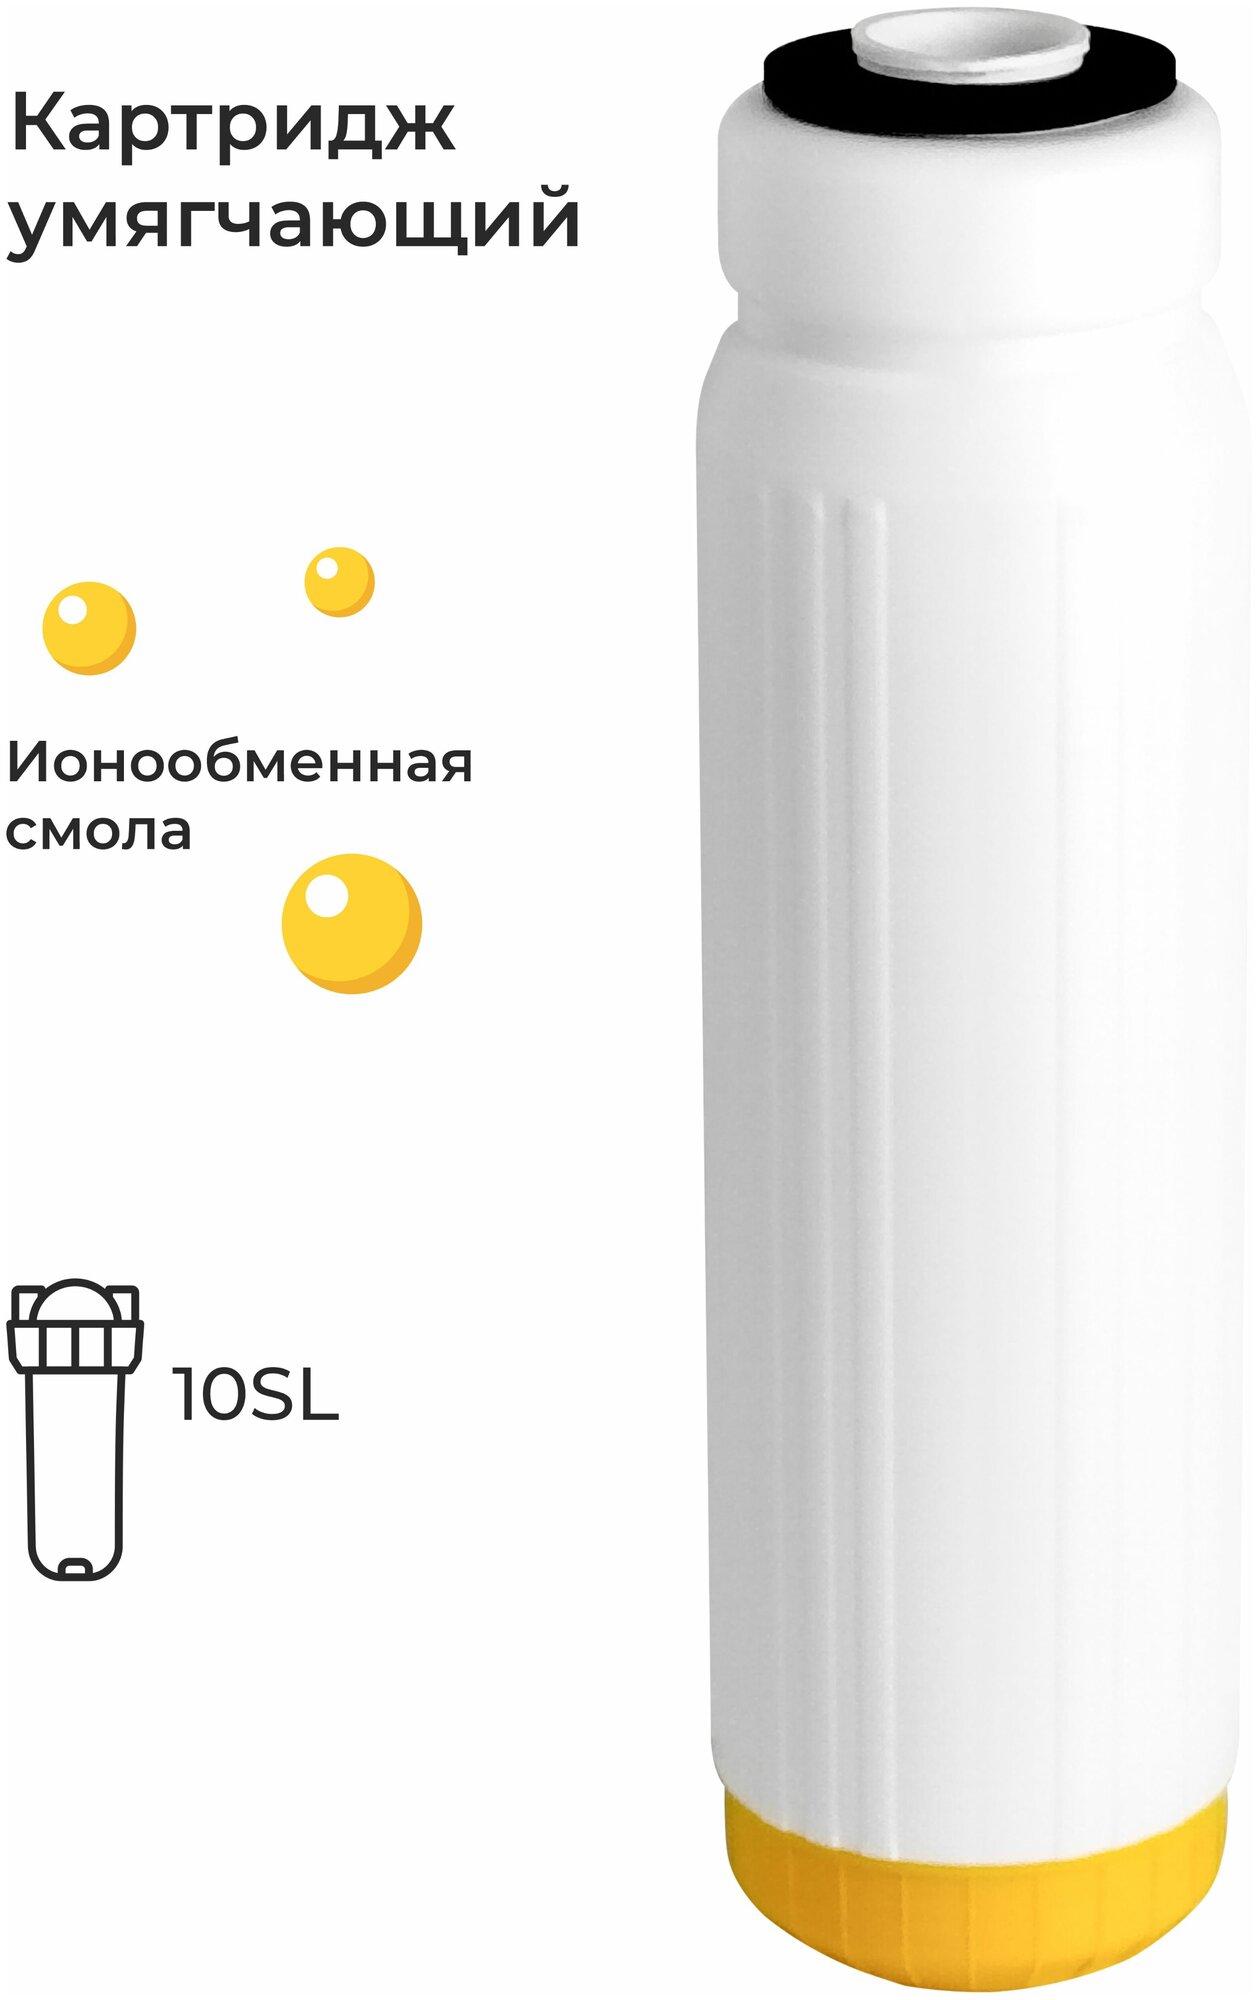 Картридж для умягчения воды с ионообменной смолой ION-10SL, умягчающий фильтр против накипи с возможностью регенерации, смола (эфио 63/250, В510-04)